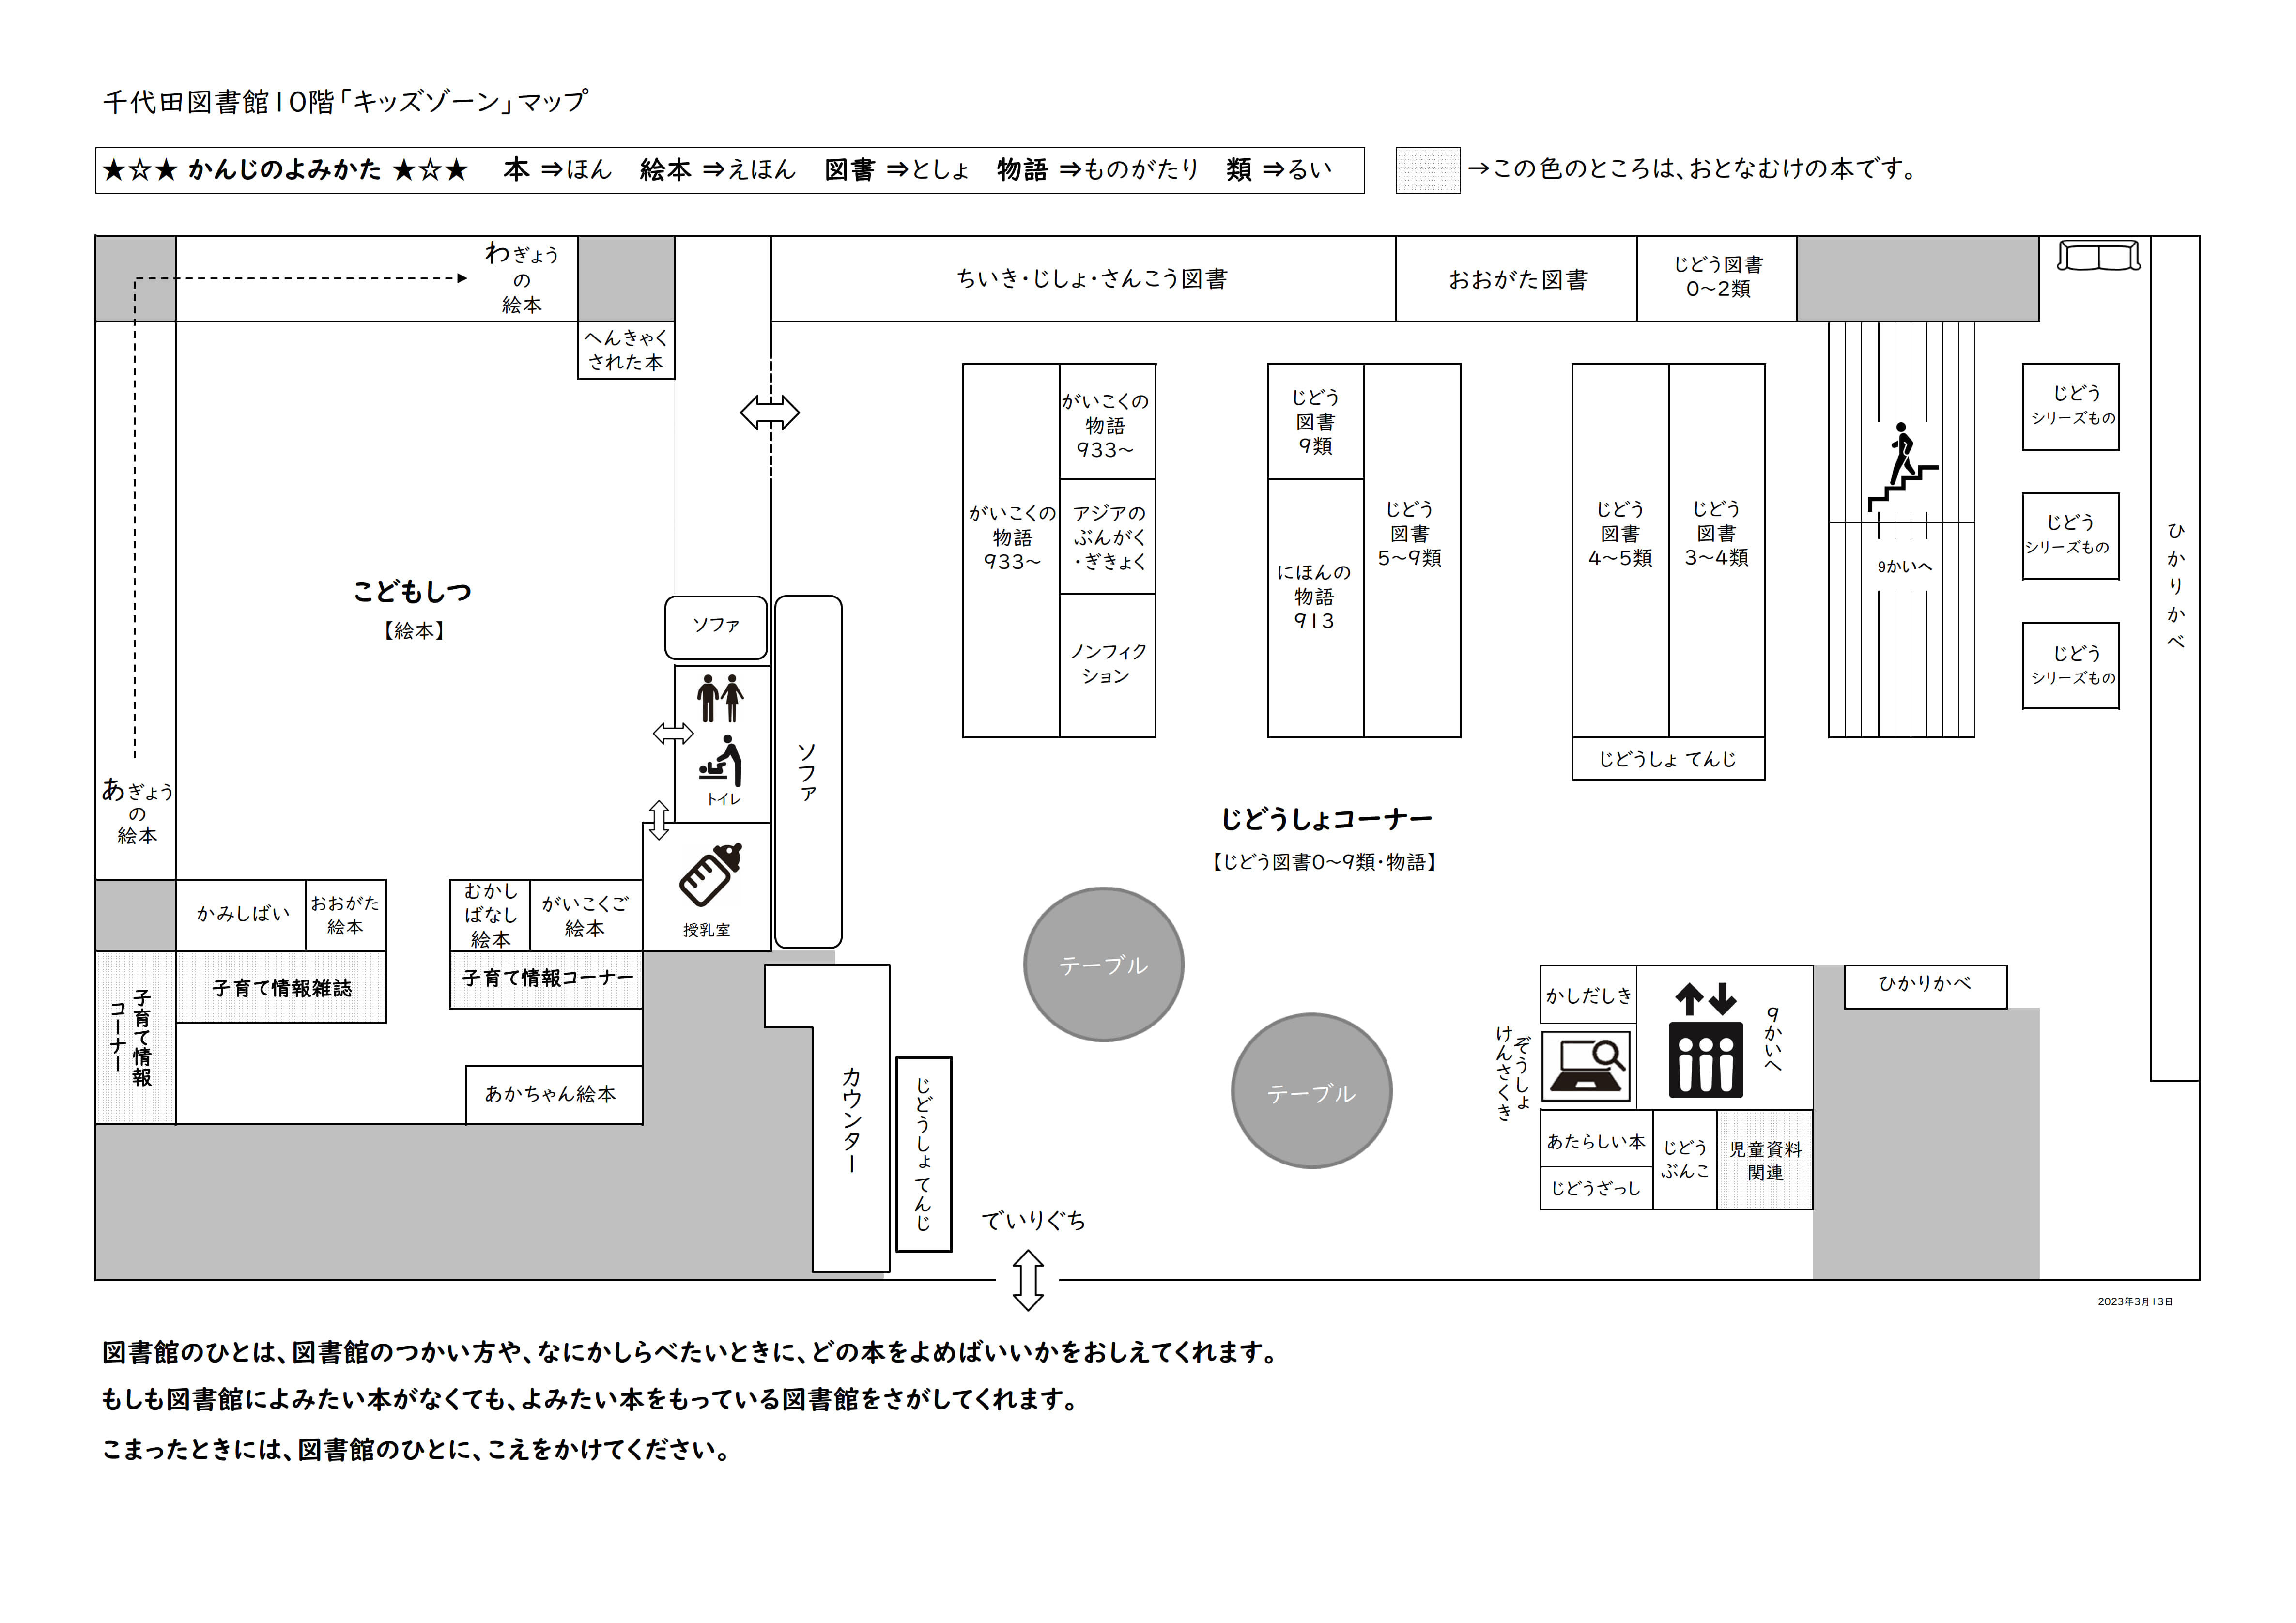 千代田図書館10階 配架図